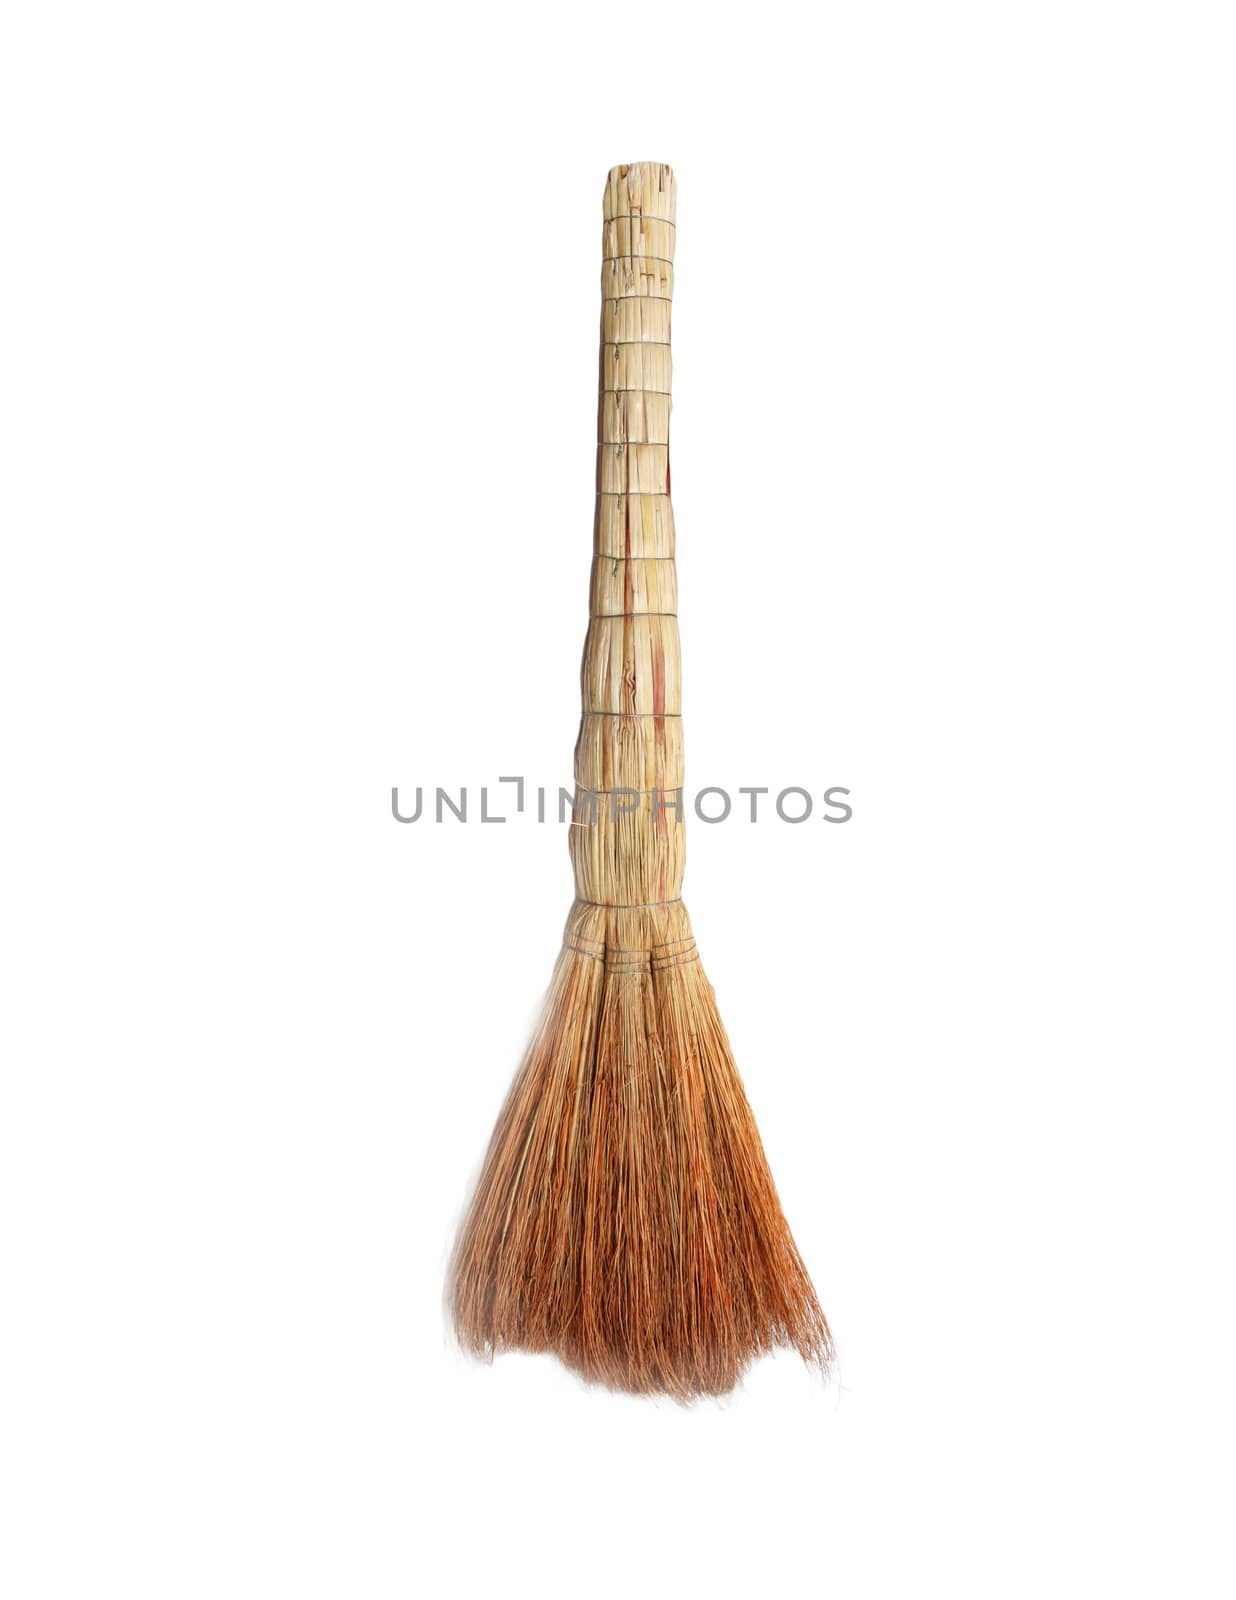 broom on white background by schankz